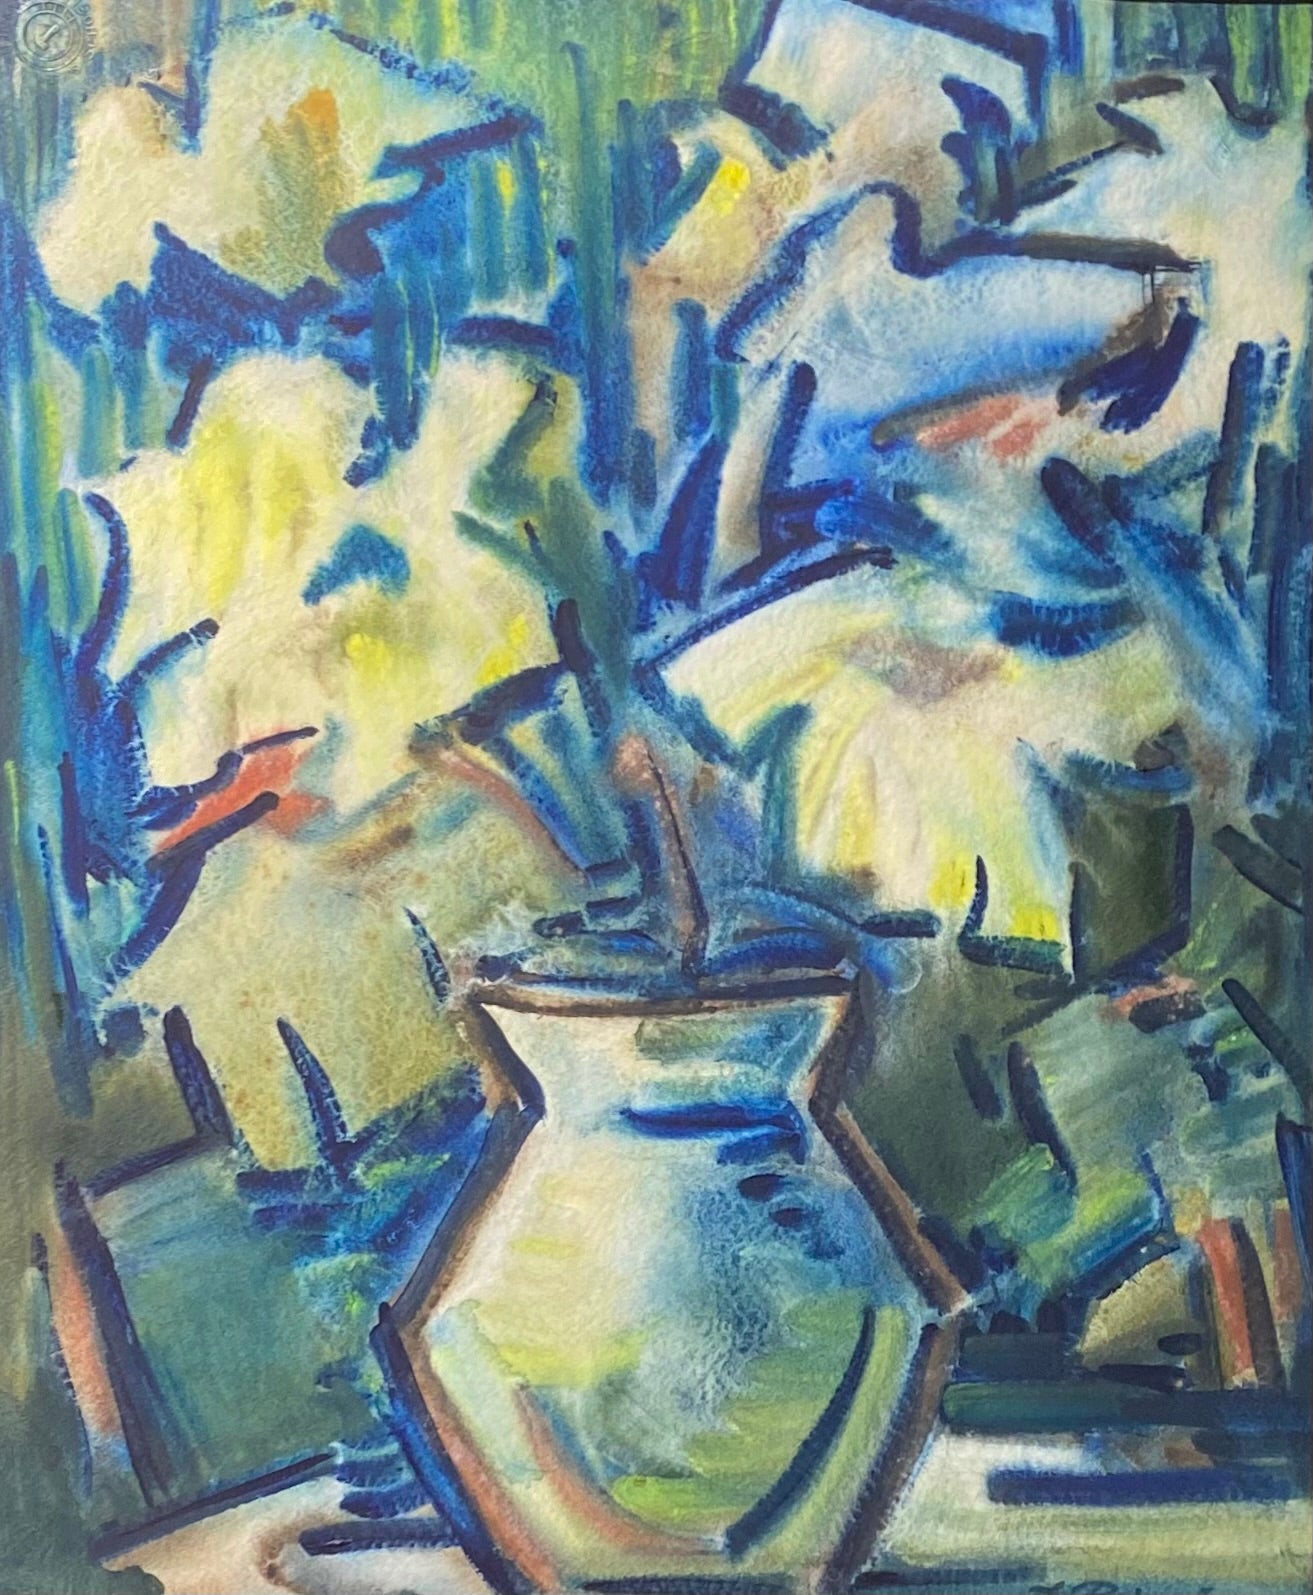 Jonas Rimša | Jarron con flores, 1961 | Watercolor, paper, 50x40